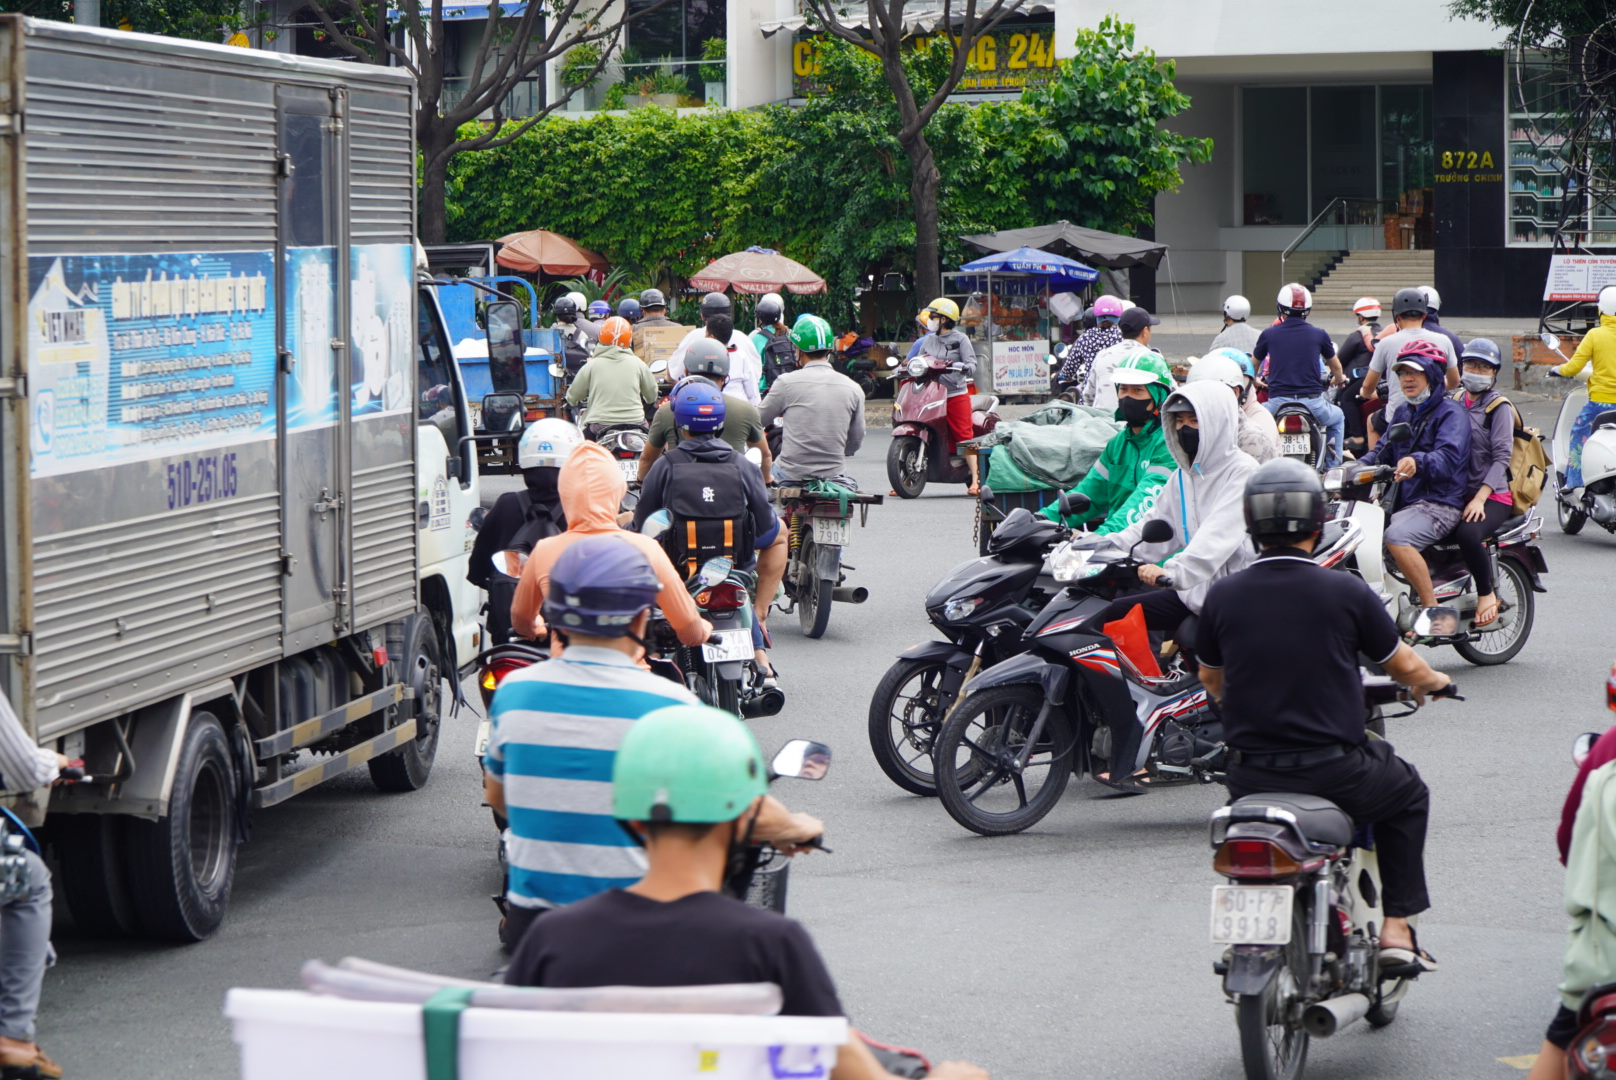 Tại một số giao lộ, giao thông khá hỗn loạn dù có đèn tín hiệu giao thông. “Đường này gần như ngày nào cũng tắc, không chỉ vào giờ cao điểm mà cả giờ thường“, ông Nguyễn Quang Hà - lái xe ôm tại trên đoạn đường này cho hay.